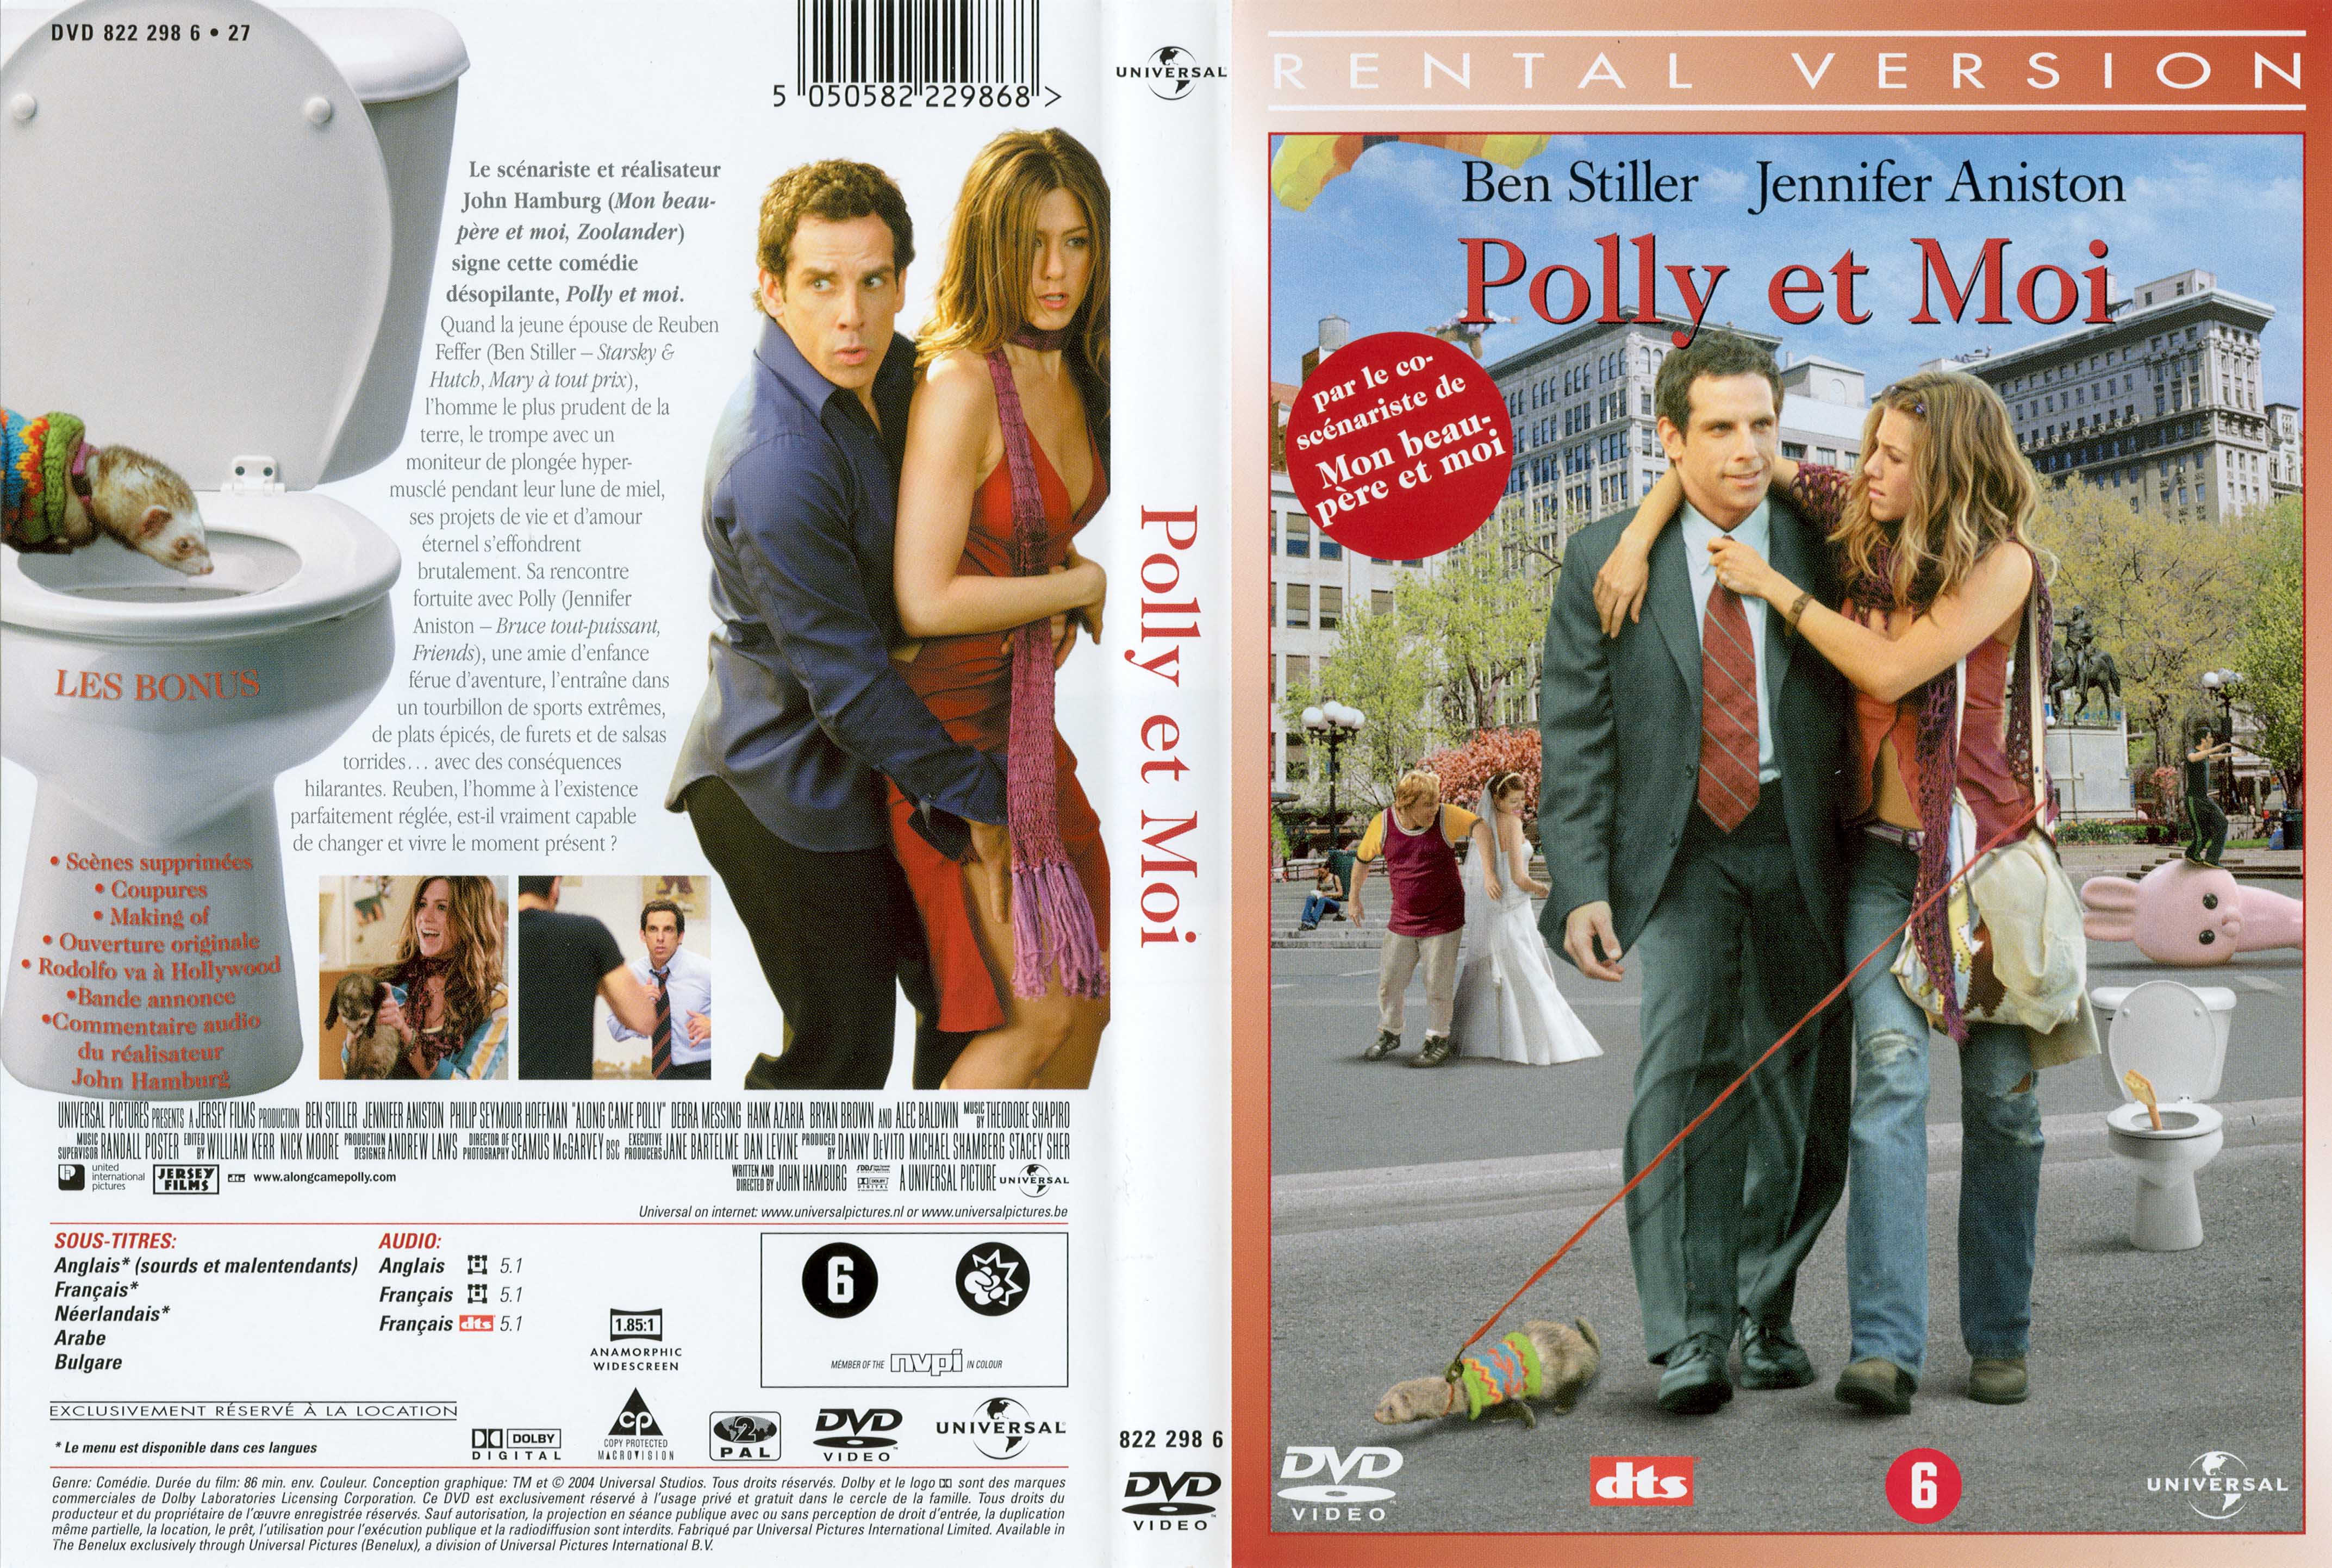 Jaquette DVD Polly et moi v2